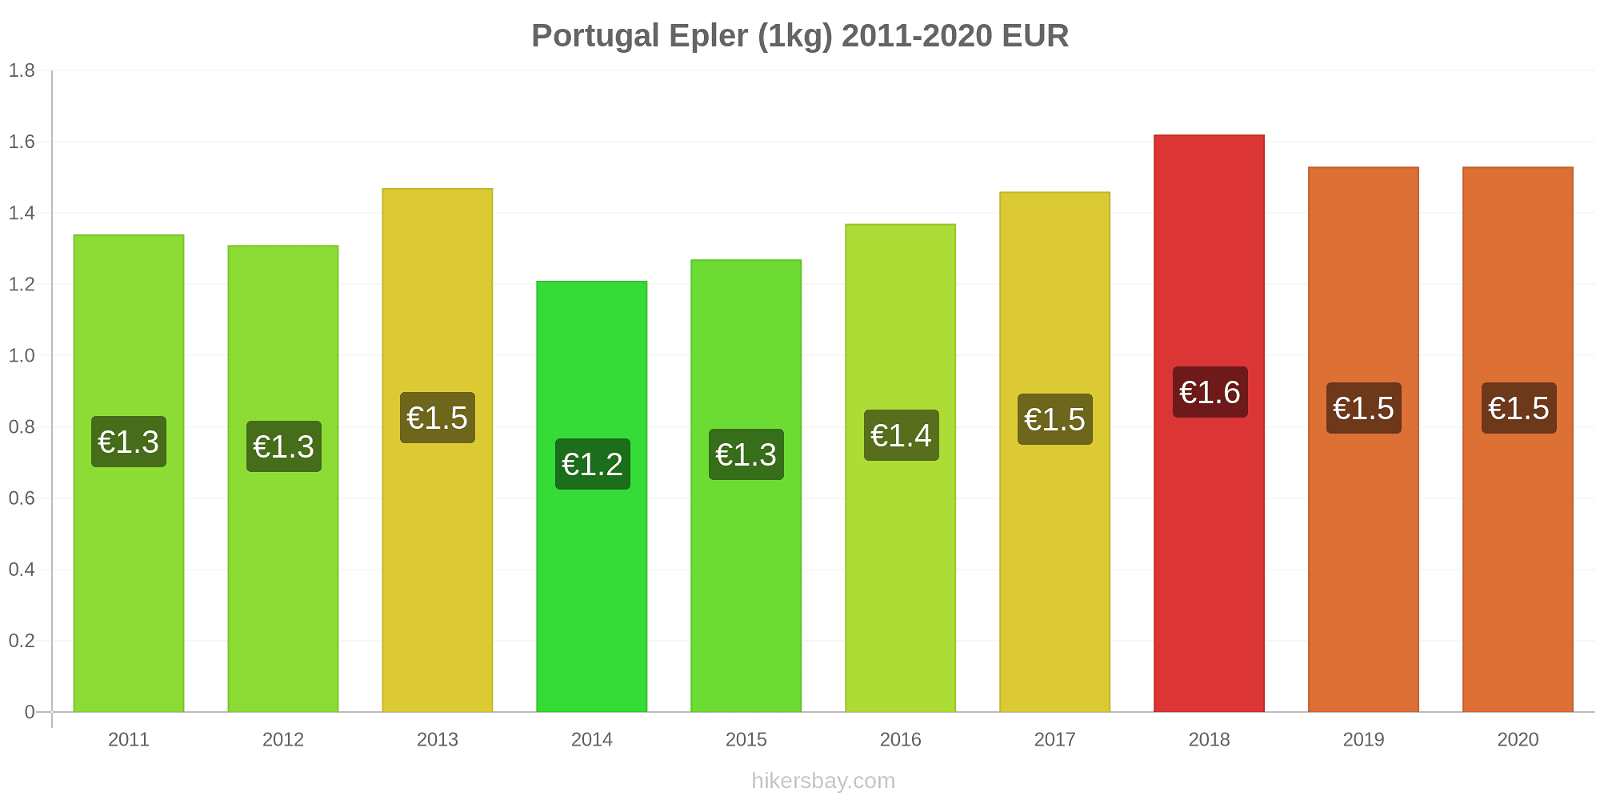 Portugal prisendringer Epler (1kg) hikersbay.com